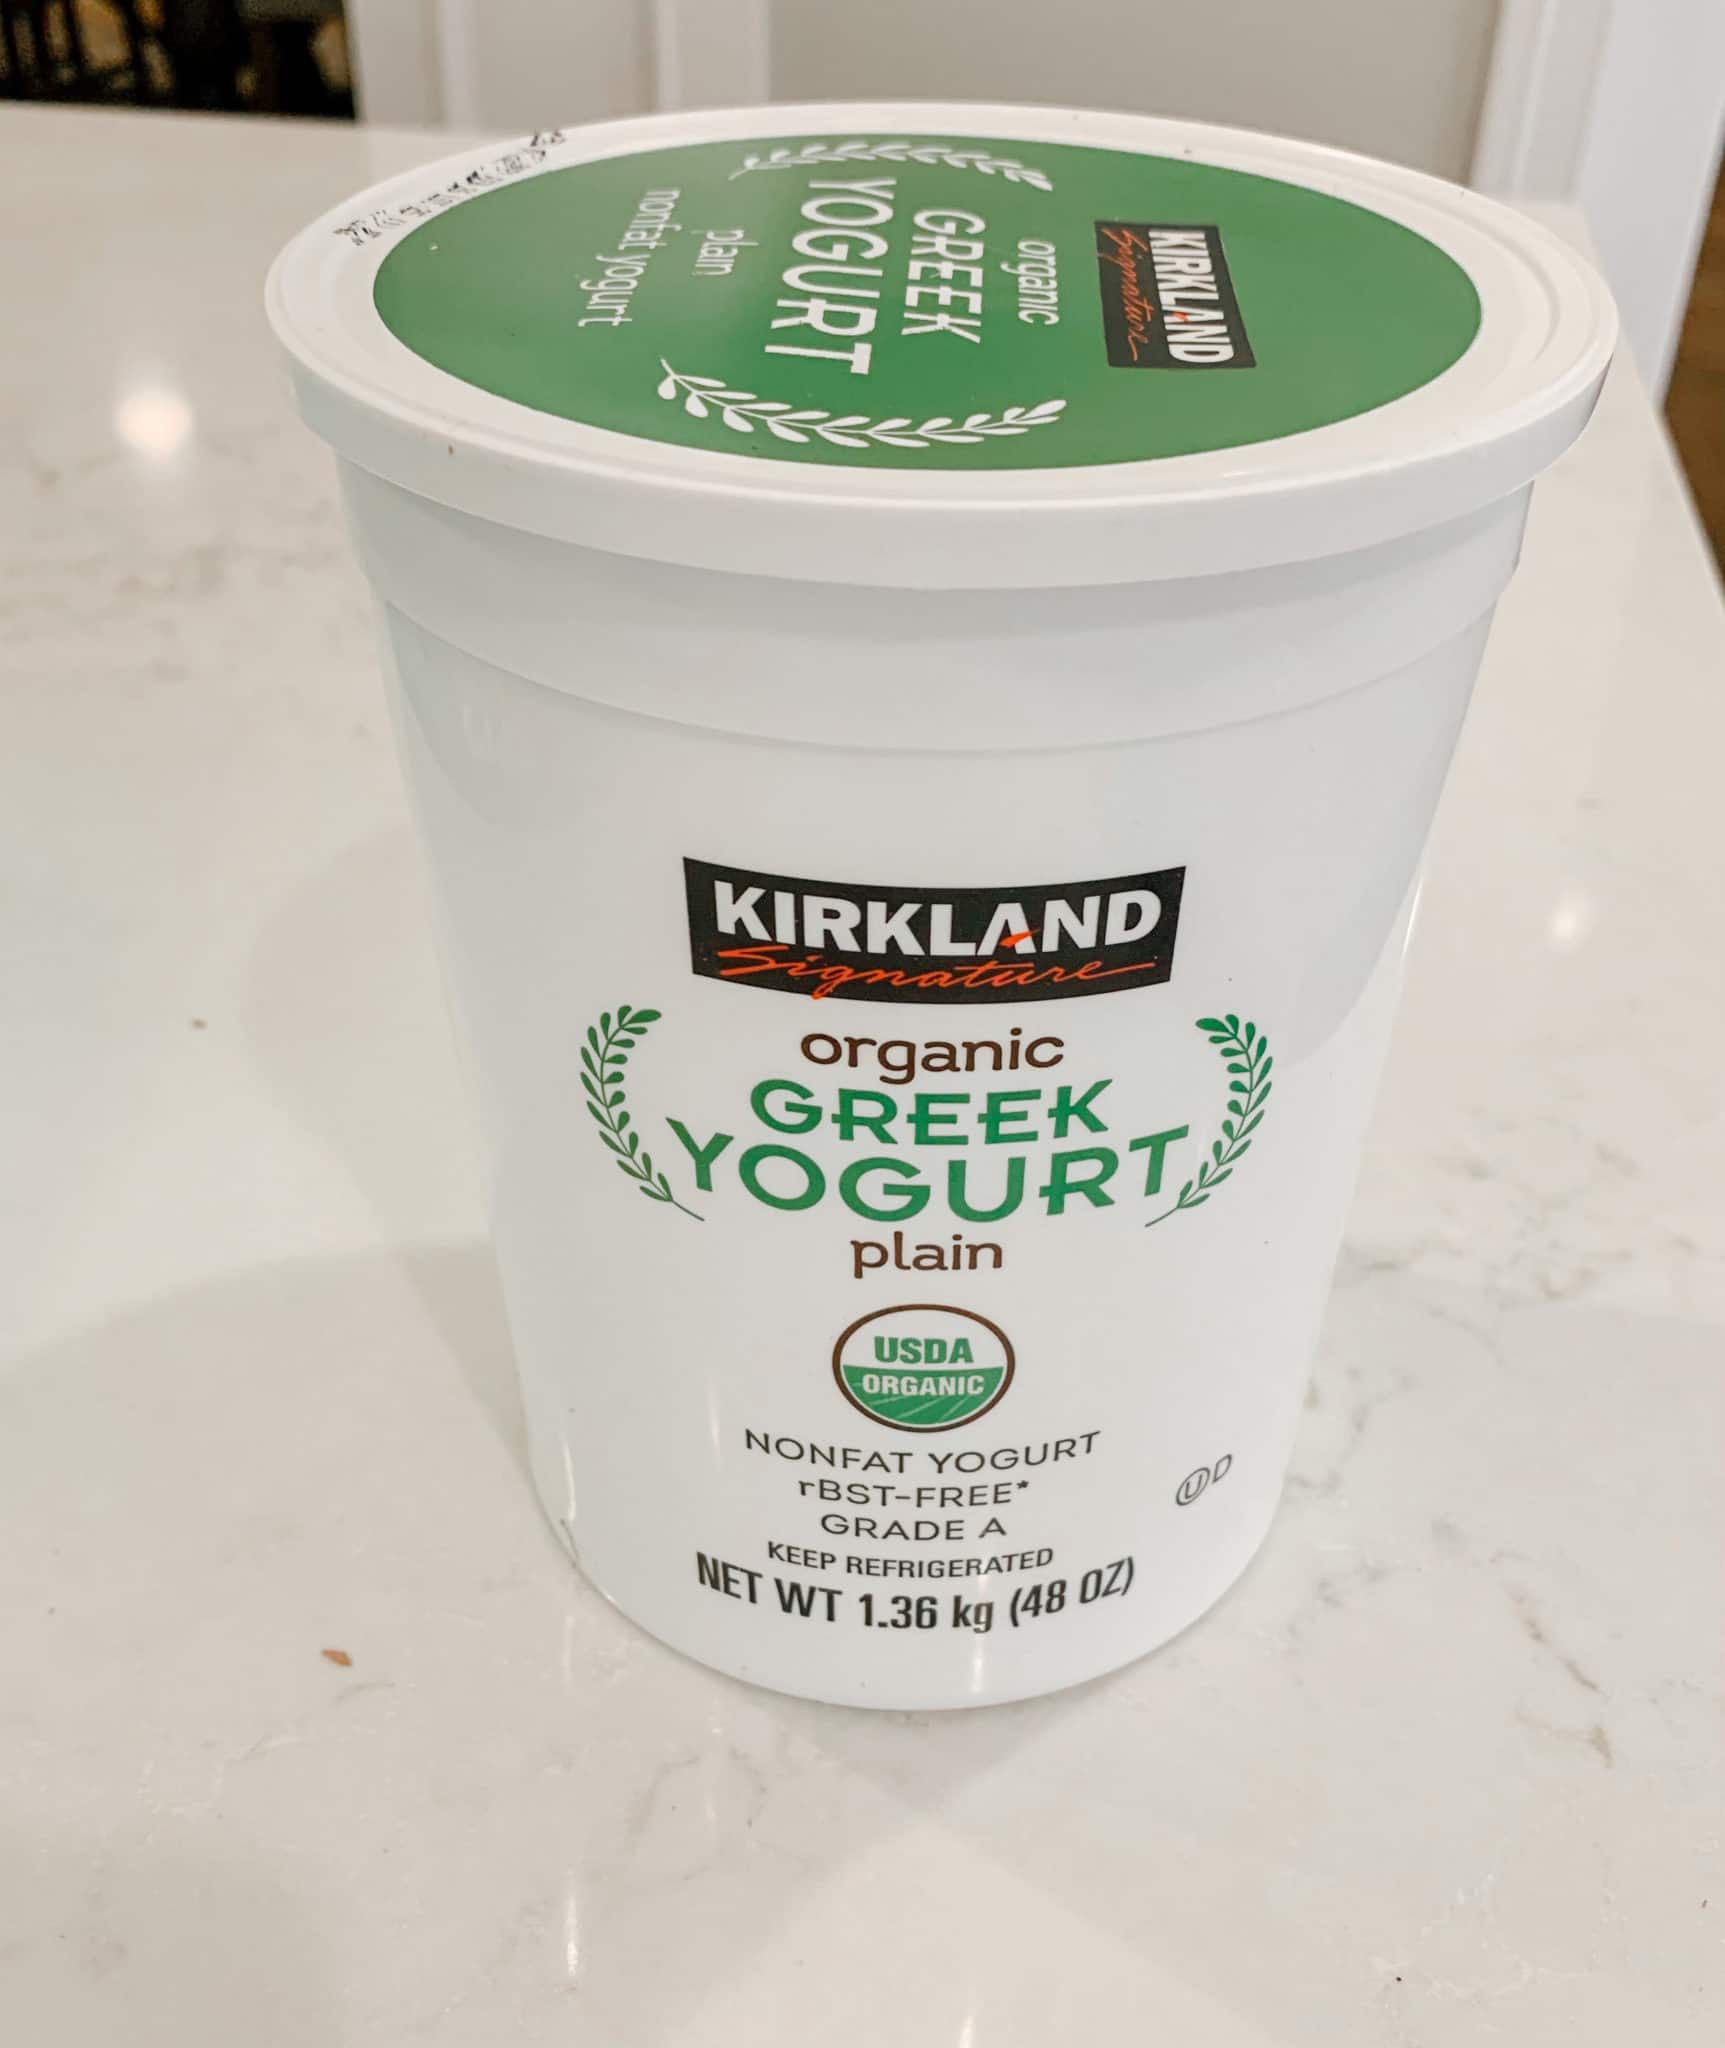 Kirkland Greek Yogurt from Costco